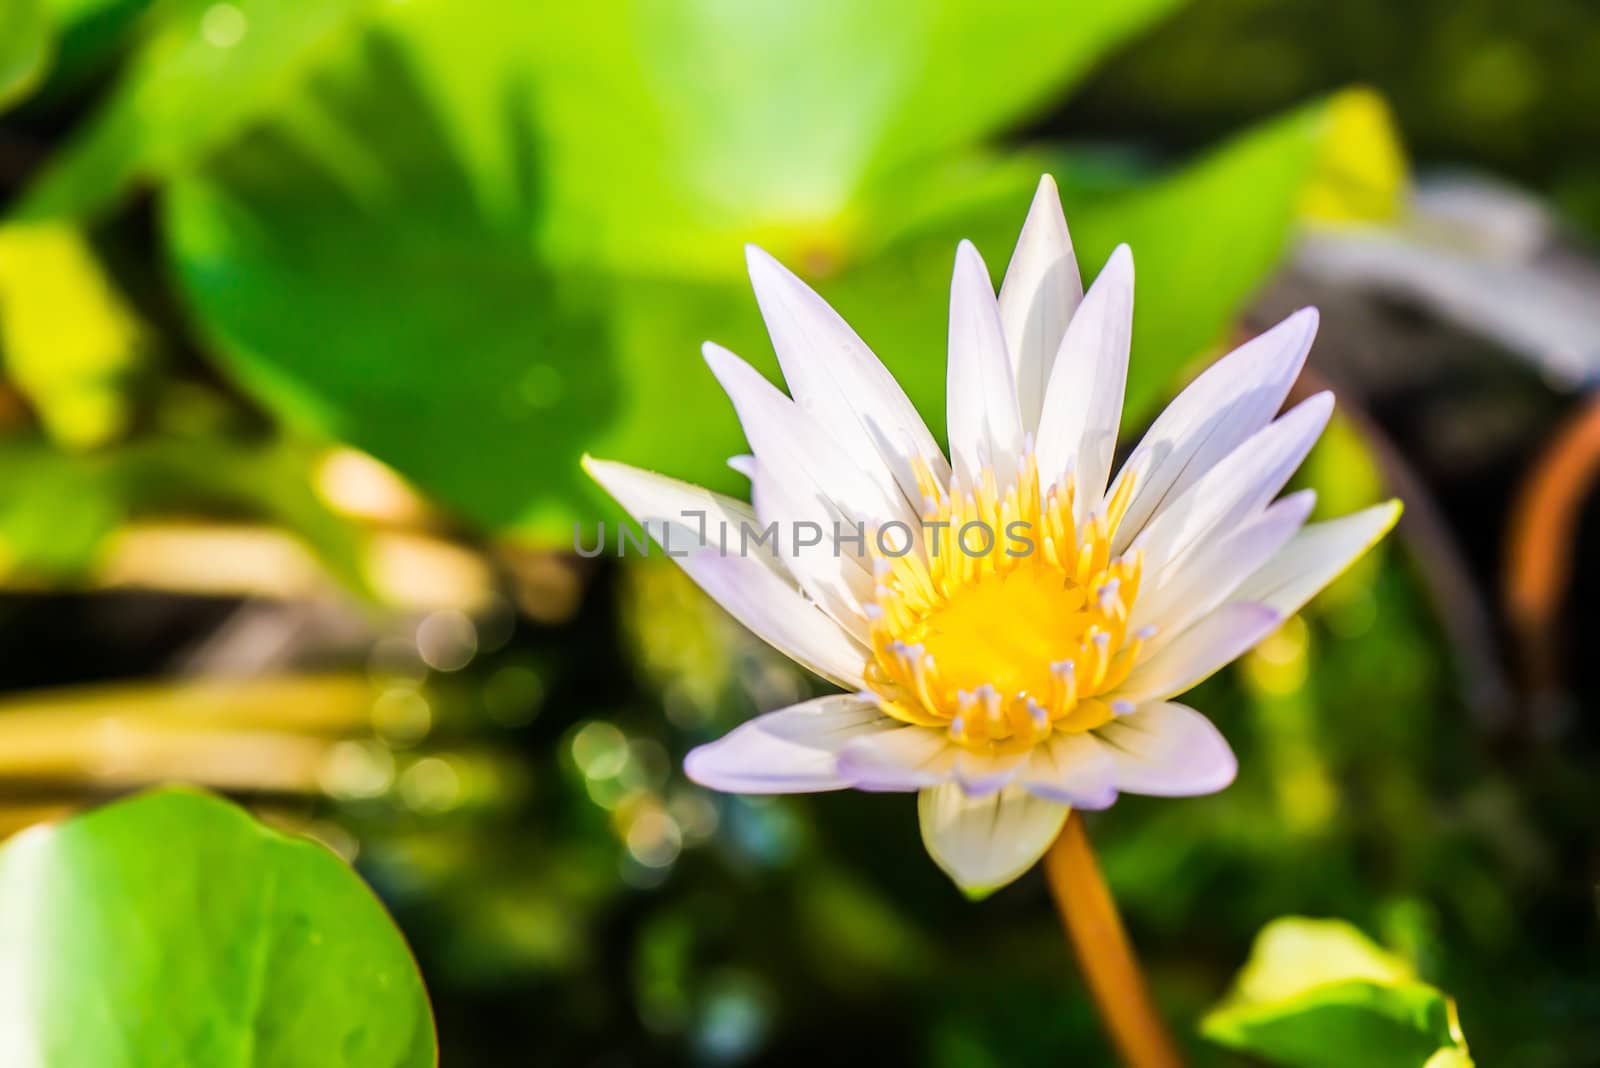 Lotus blossom by wmitrmatr